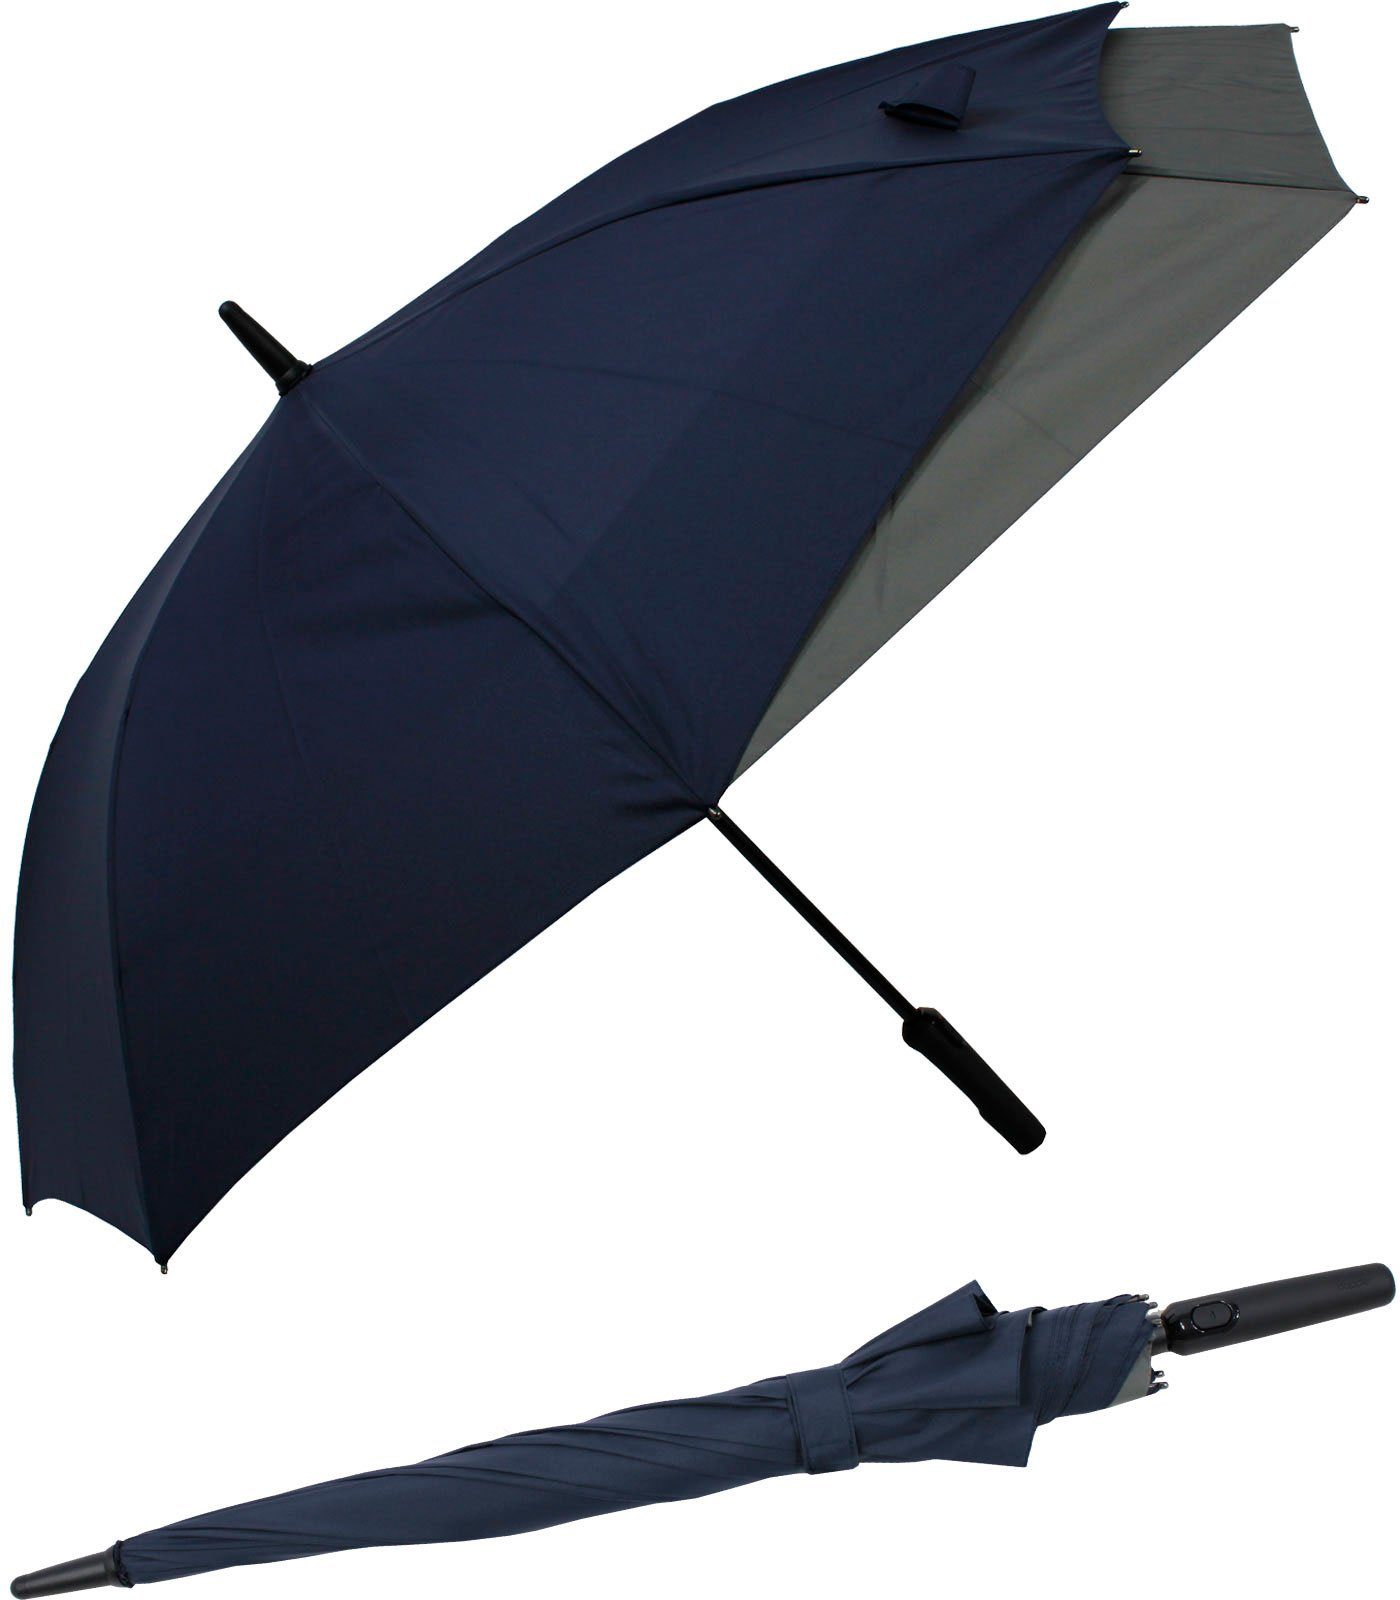 doppler® Langregenschirm Fiberglas mit Auf-Automatik - Move to XL, vergrößert sich beim Öffnen für mehr Schutz vor Regen navyblau-grau